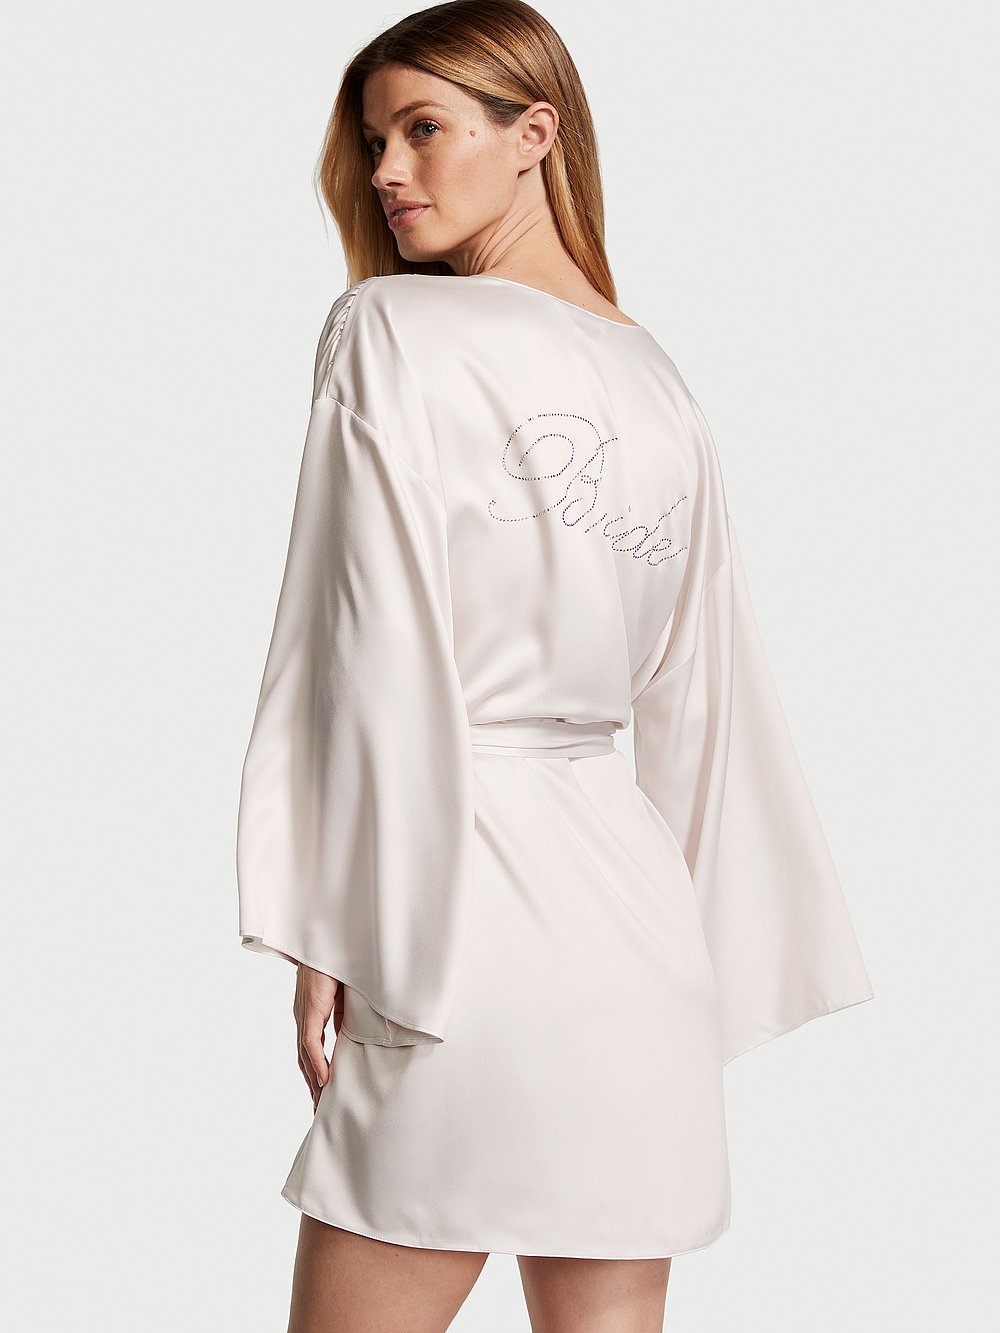 Короткий атласный халат с украшением для невесты Victoria's Secret